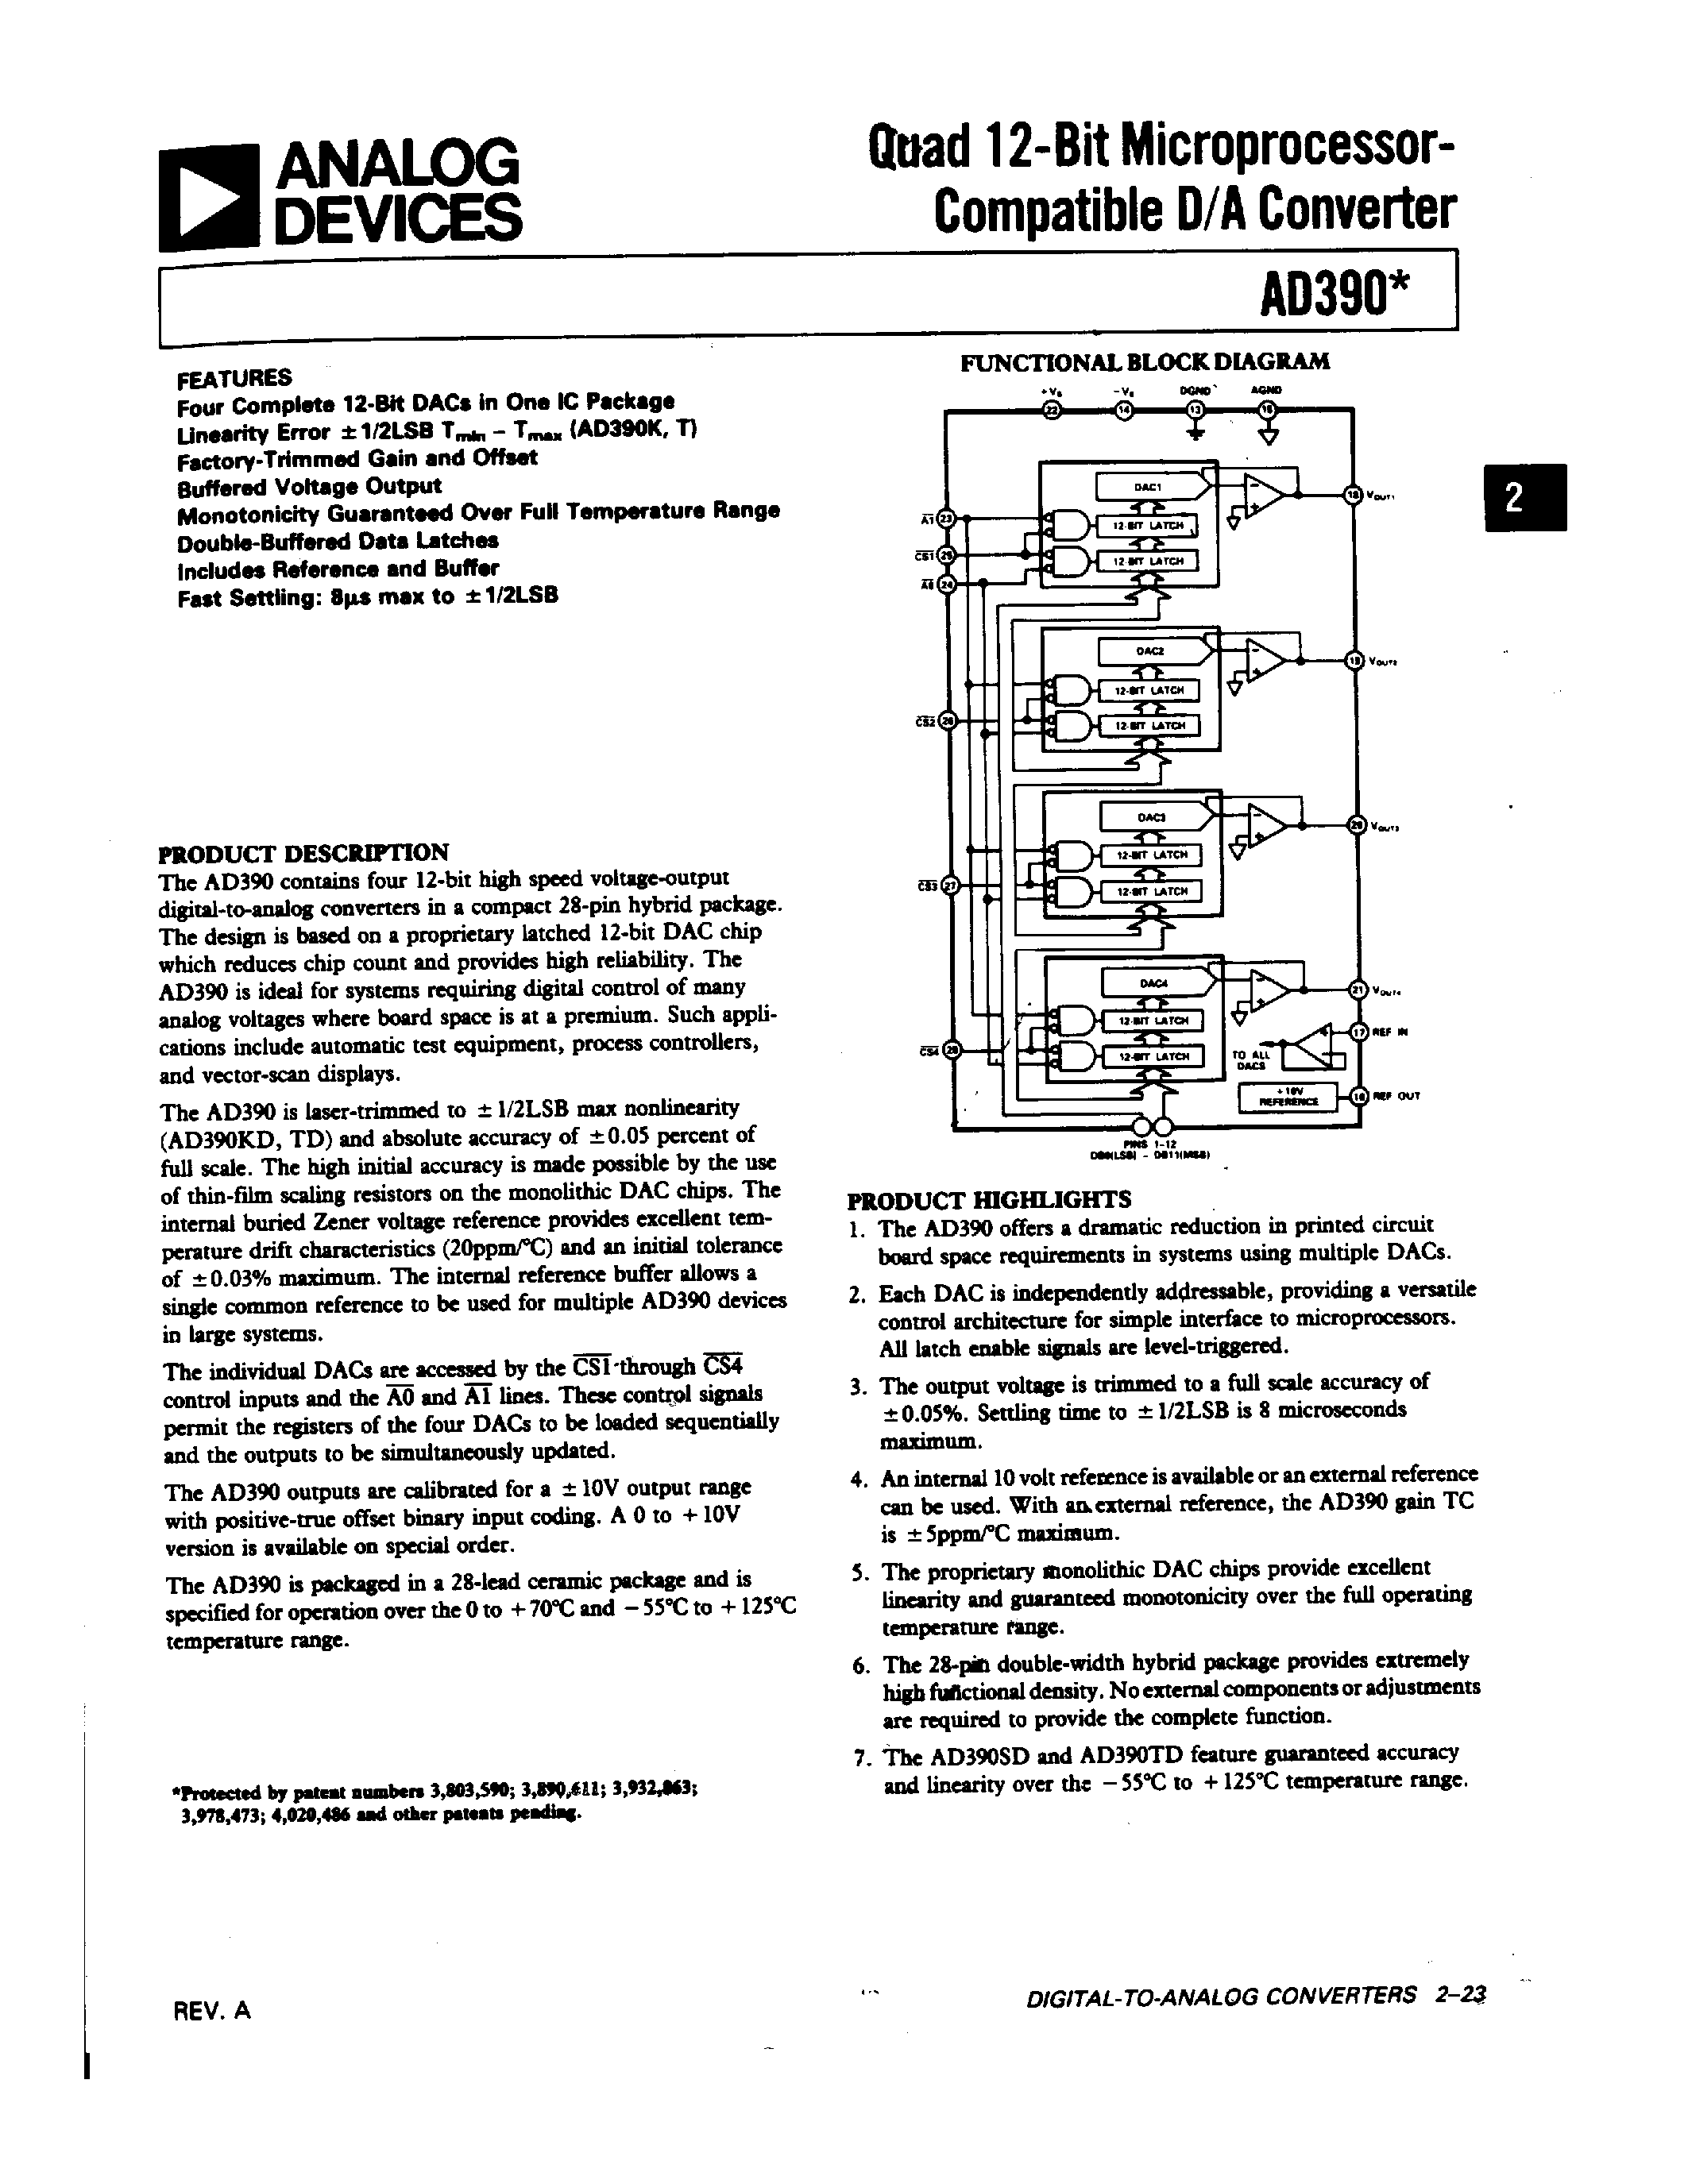 Даташит AD390TD - Quad 12-Bit Microprocessor-Compatible D/A Converter страница 1